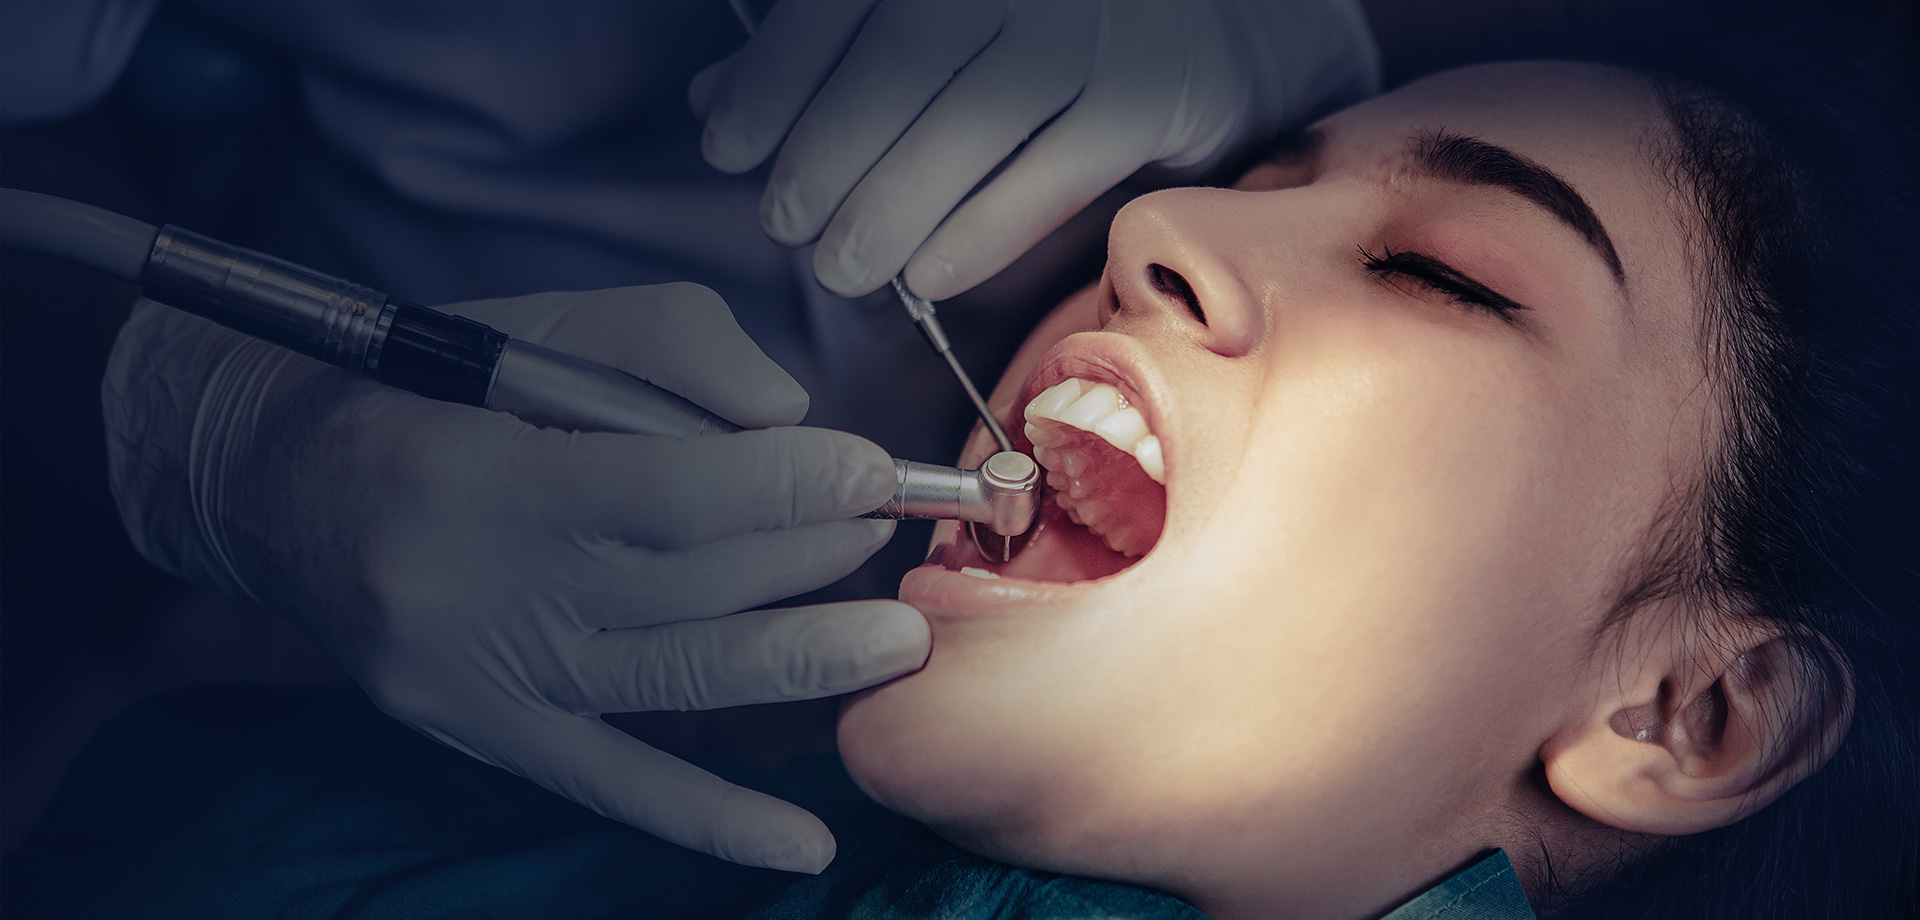 La nostra clinica dentale: prezzi competitivi per gli impianti dentali, senza bisogno di cercare altrove